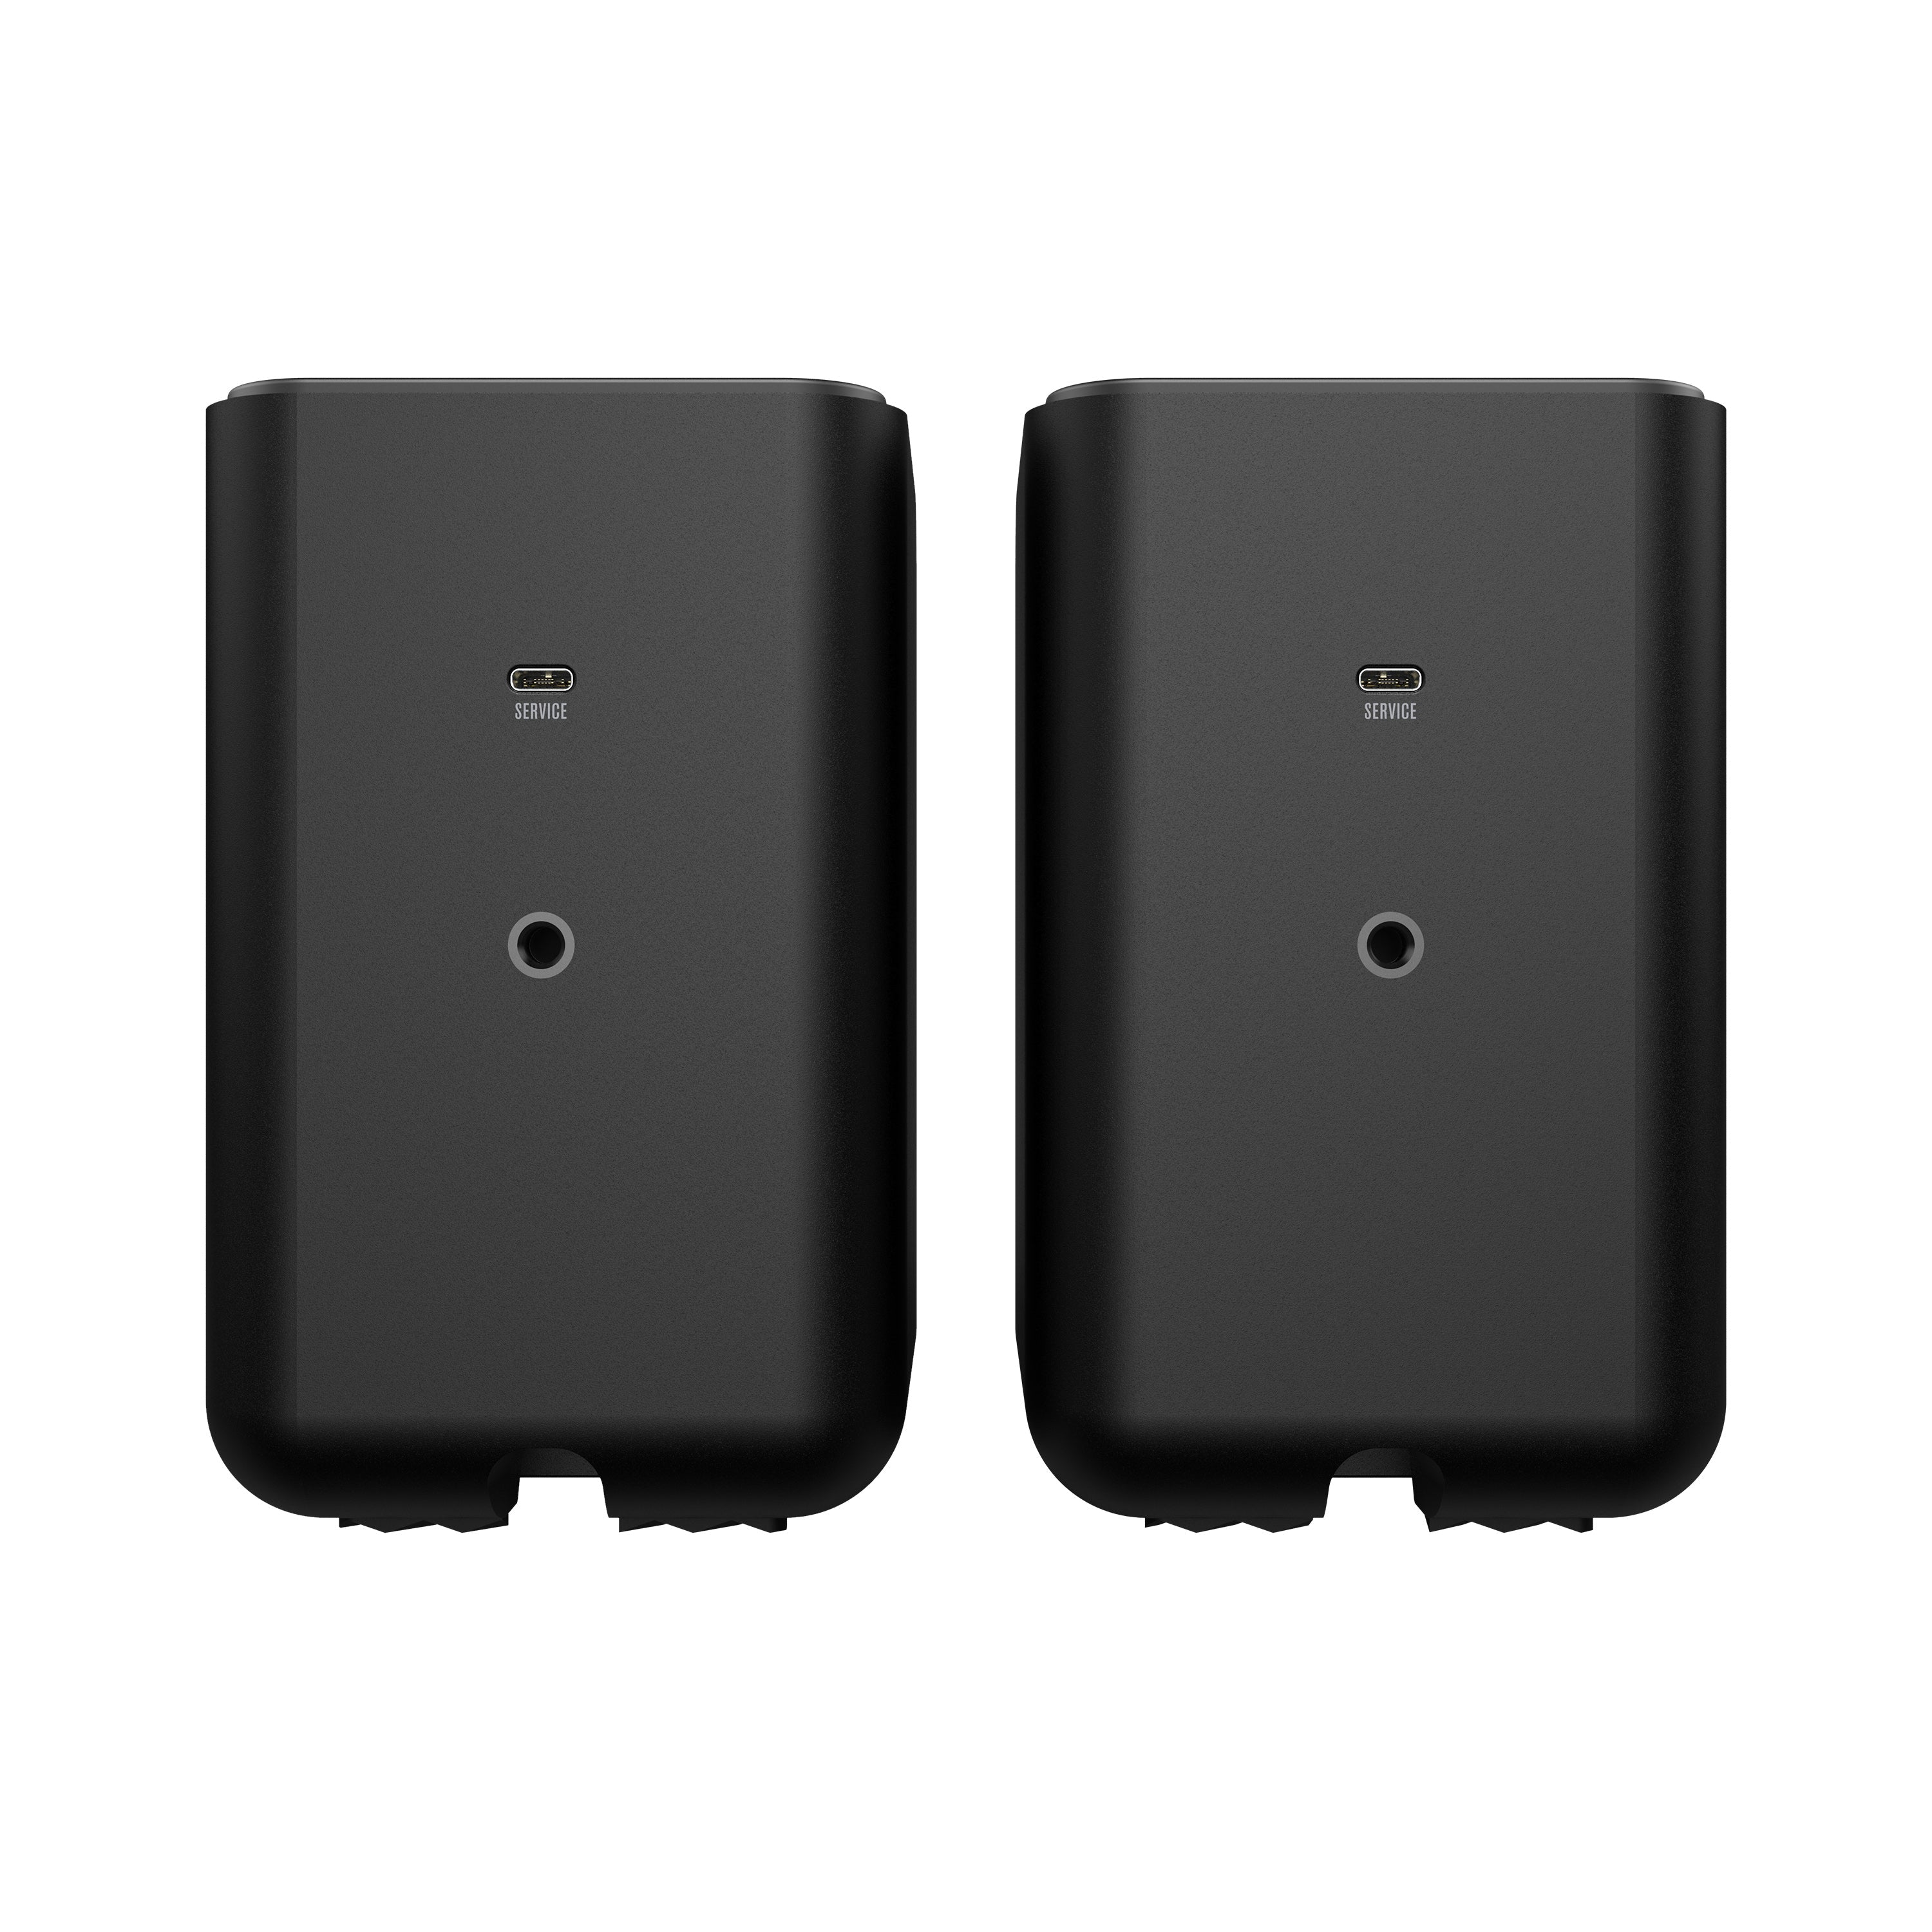 Klipsch Flexus Surr 100 Wireless Surround Speakers